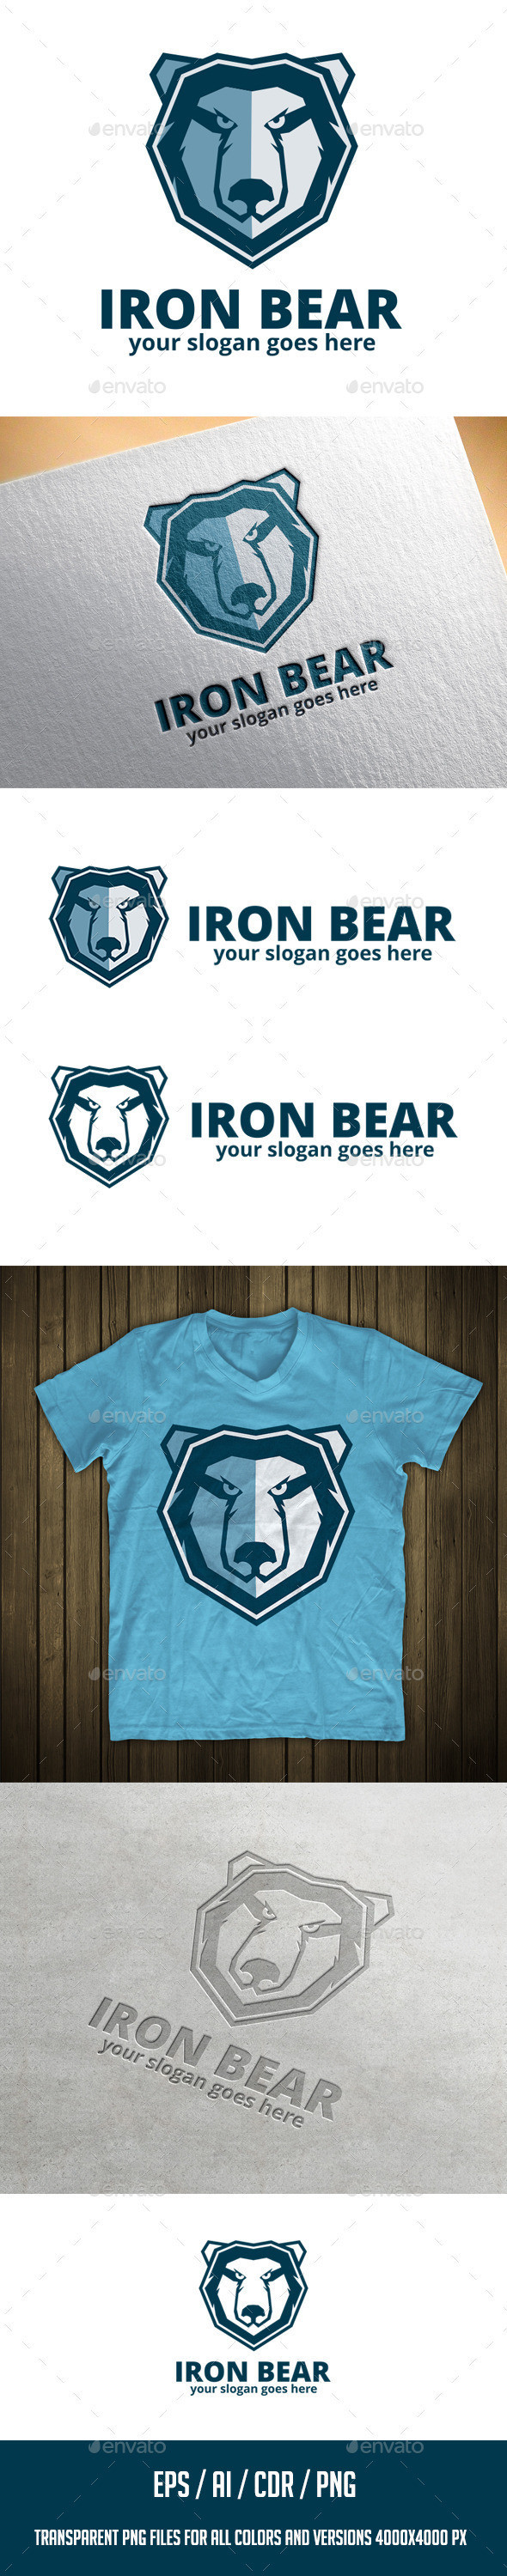 Iron bear logo preview